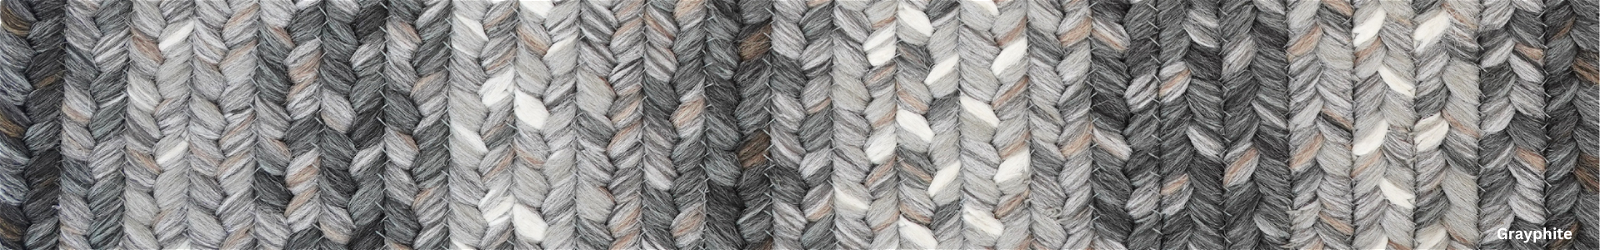 10 x 10 - Grey Braided Rugs